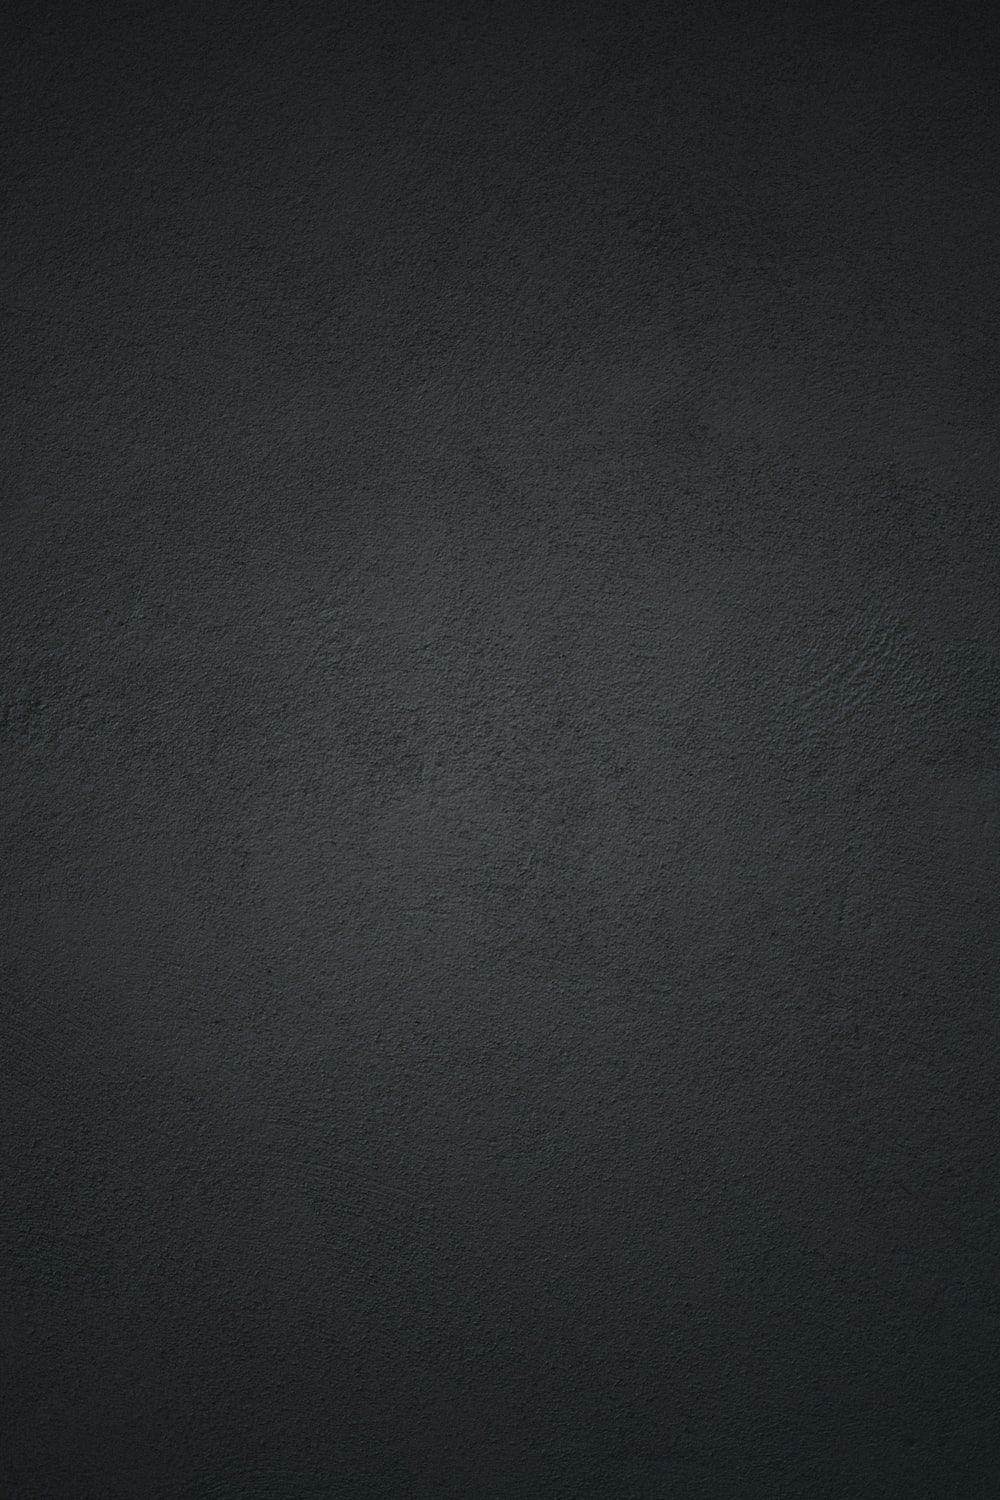 Hình nền đen xám (black grey wallpapers): Muốn tìm kiếm một hình nền tuyệt đẹp cho điện thoại hay máy tính của mình? Những bức hình nền đen xám uyển chuyển, tinh tế và đẳng cấp sẽ khiến cho màn hình của bạn trở nên lung linh và đầy tính thẩm mỹ. Hãy khám phá bức tranh đầy mê hoặc này để làm mới không gian làm việc của bạn.